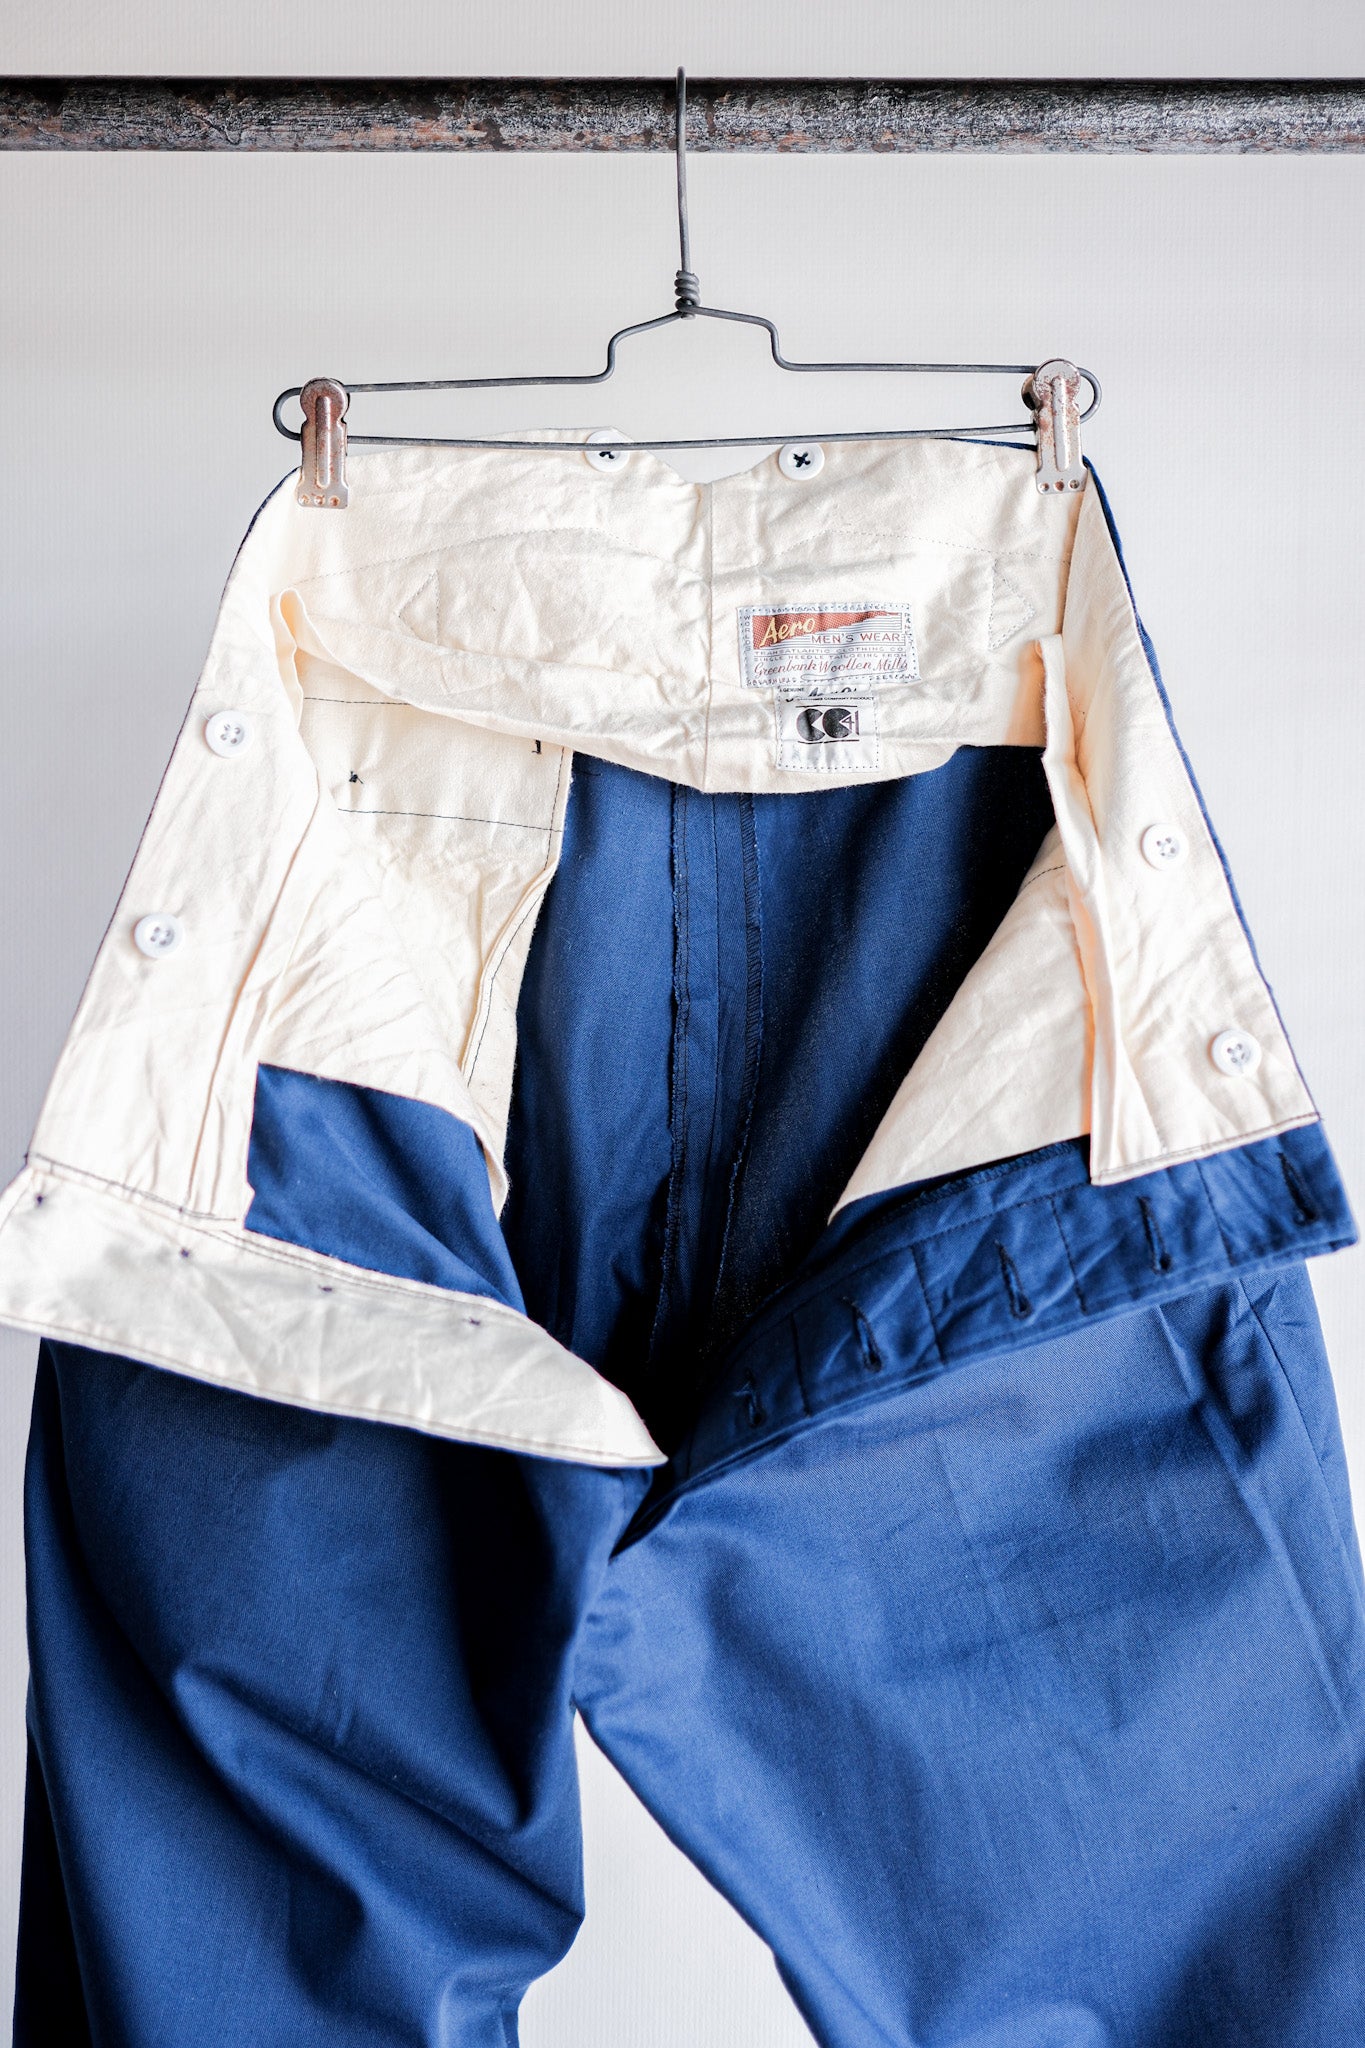 [~ 40's] British Vintage Blue Cotton Trousers "CC41" "Dead Stock"